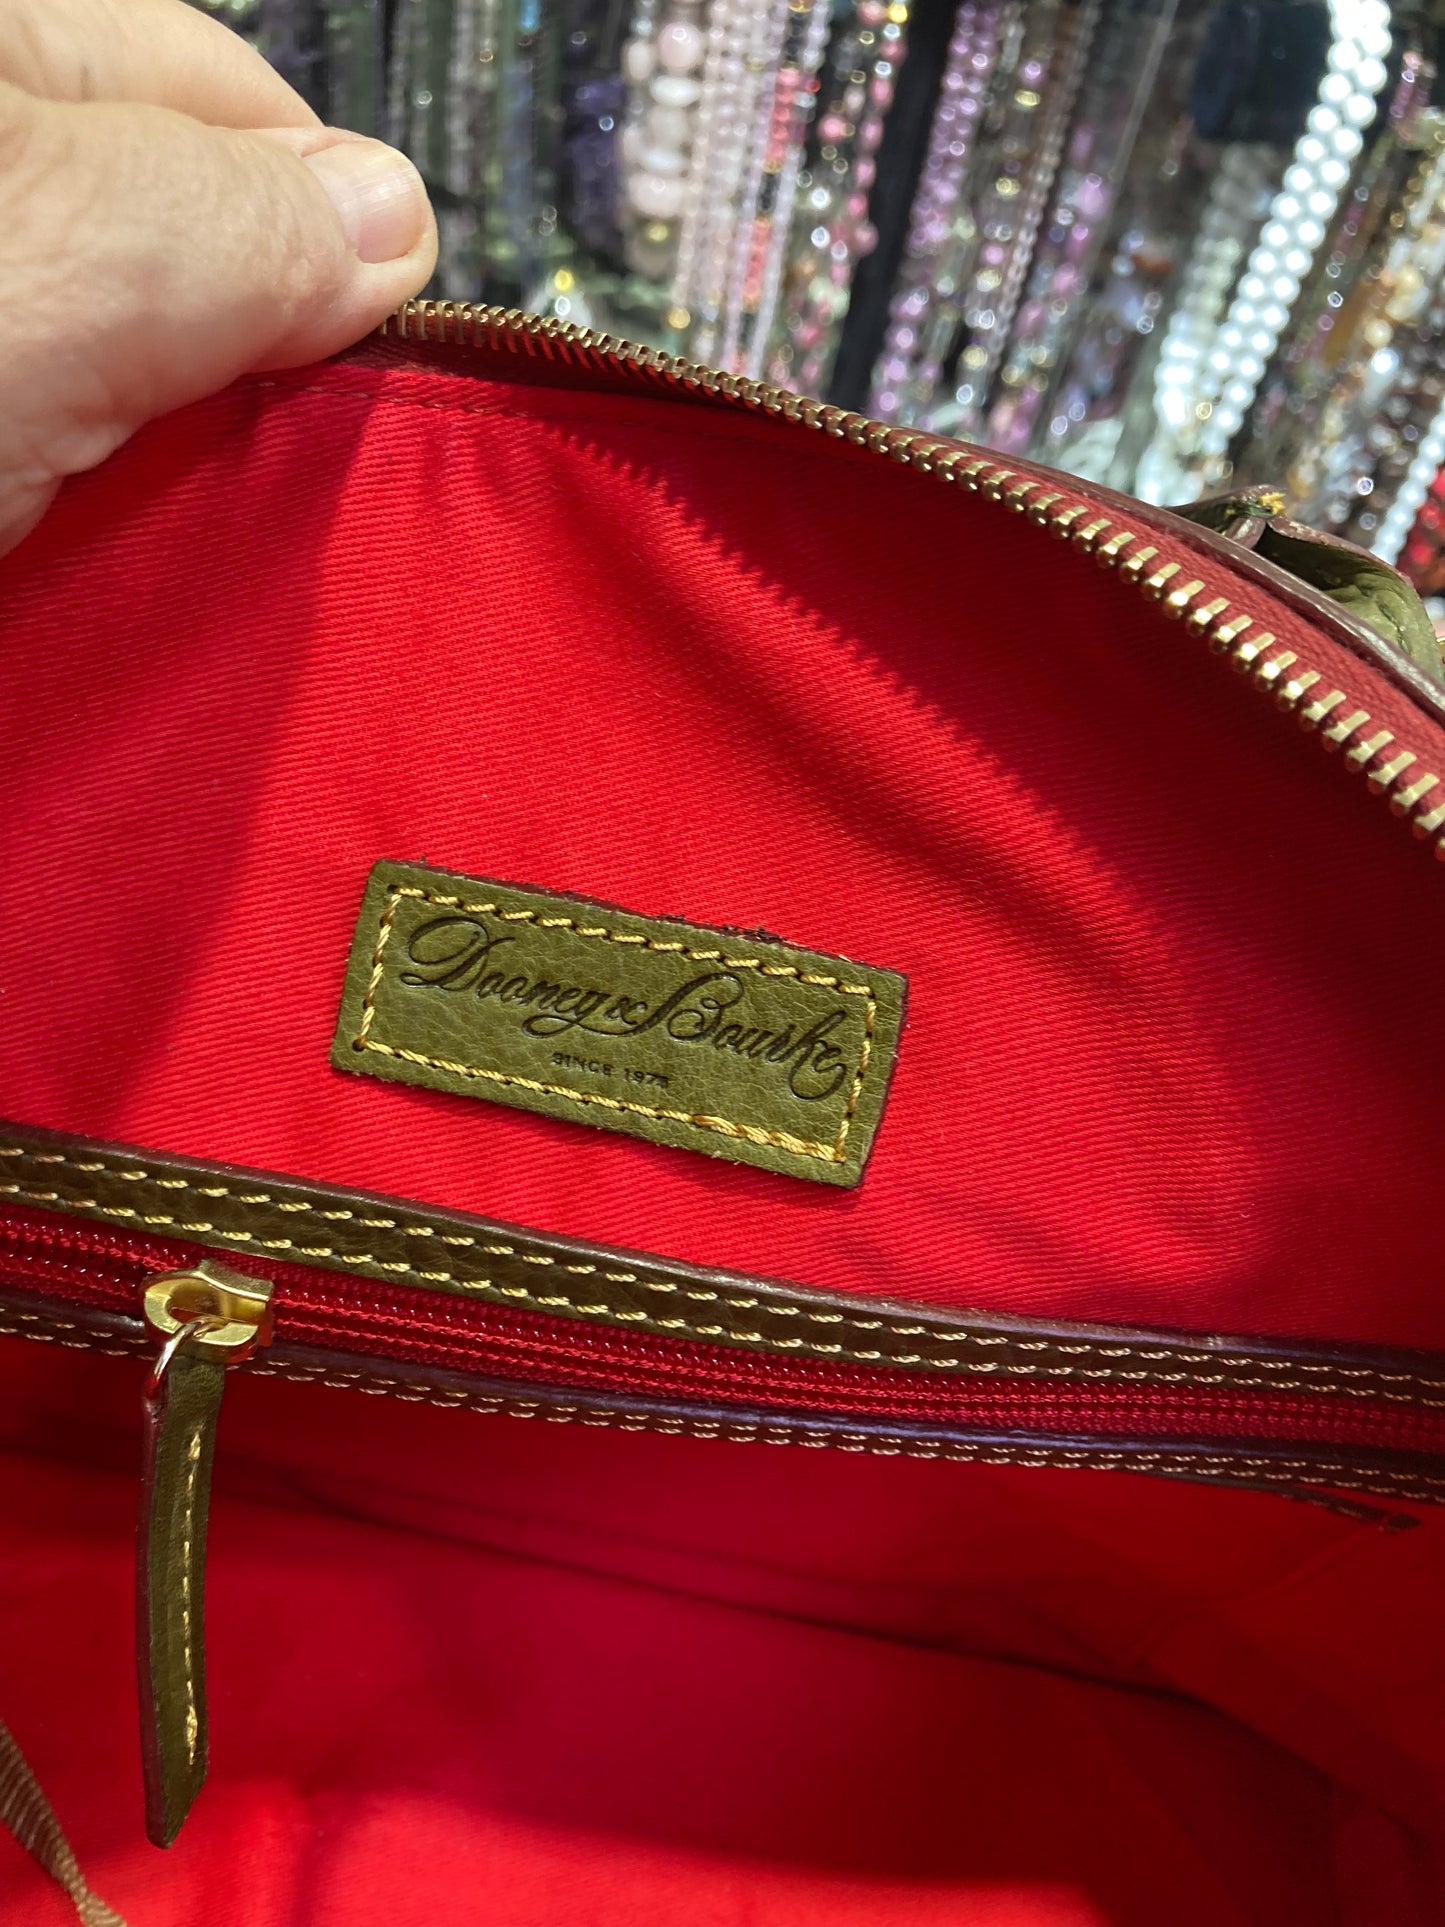 Dooney  Bourke Designer Handbag leather green color